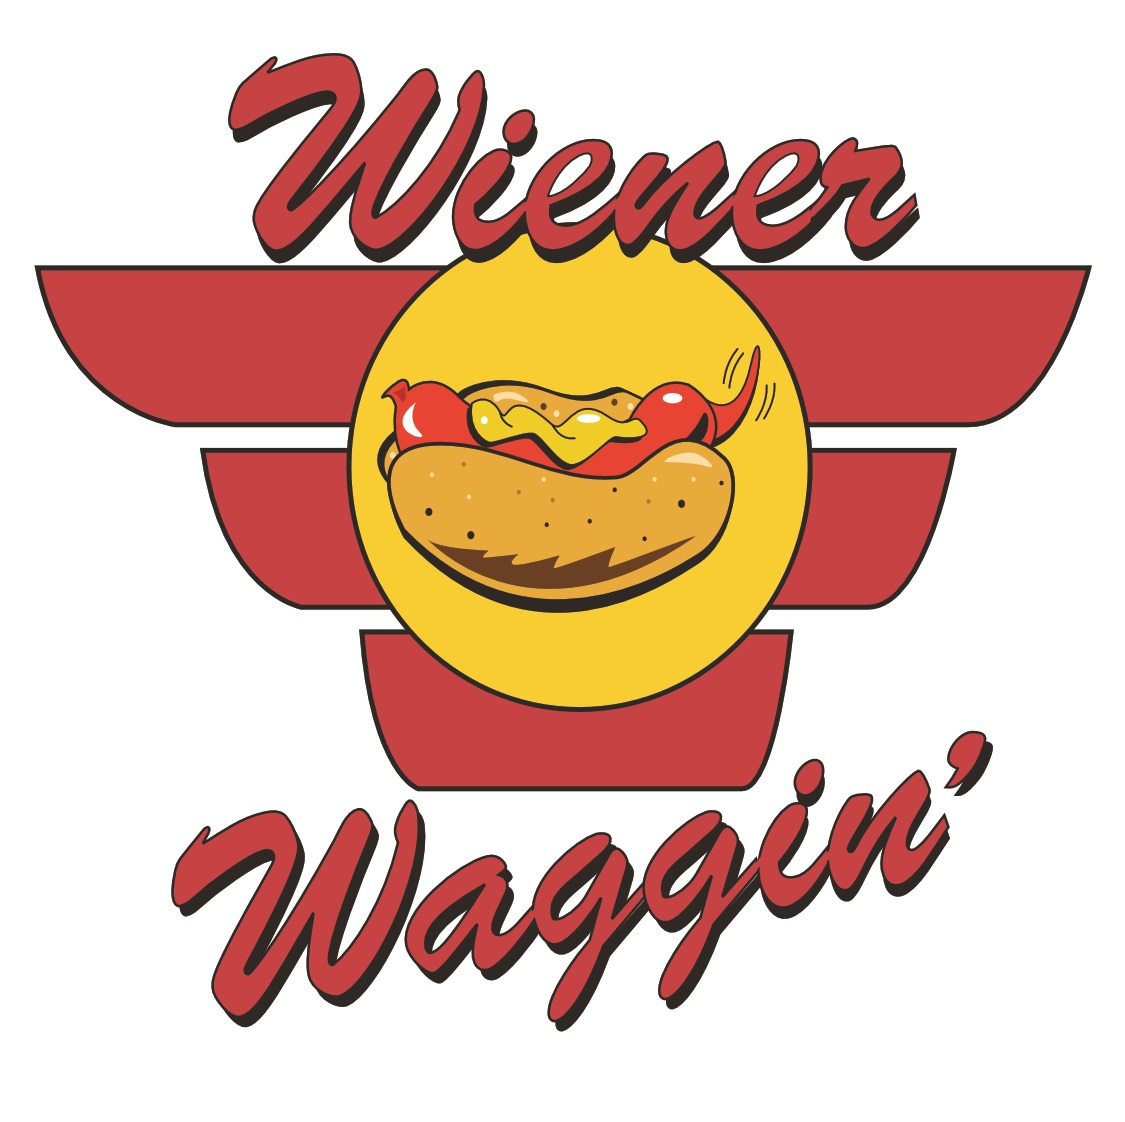 Wiener Waggin’